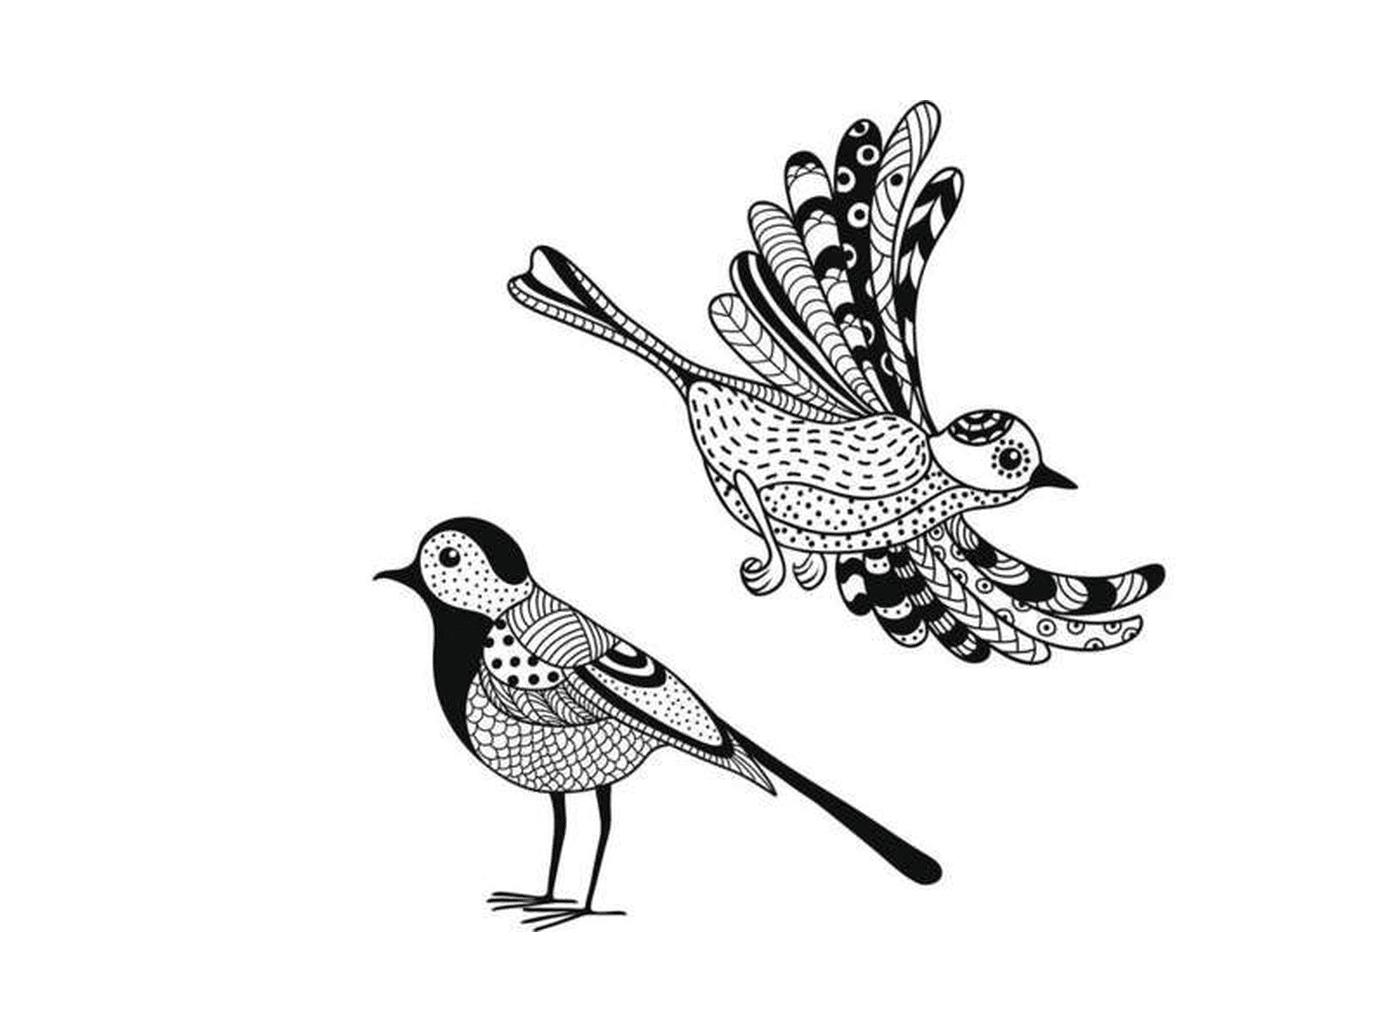  dois desenhos em preto e branco de um pássaro 